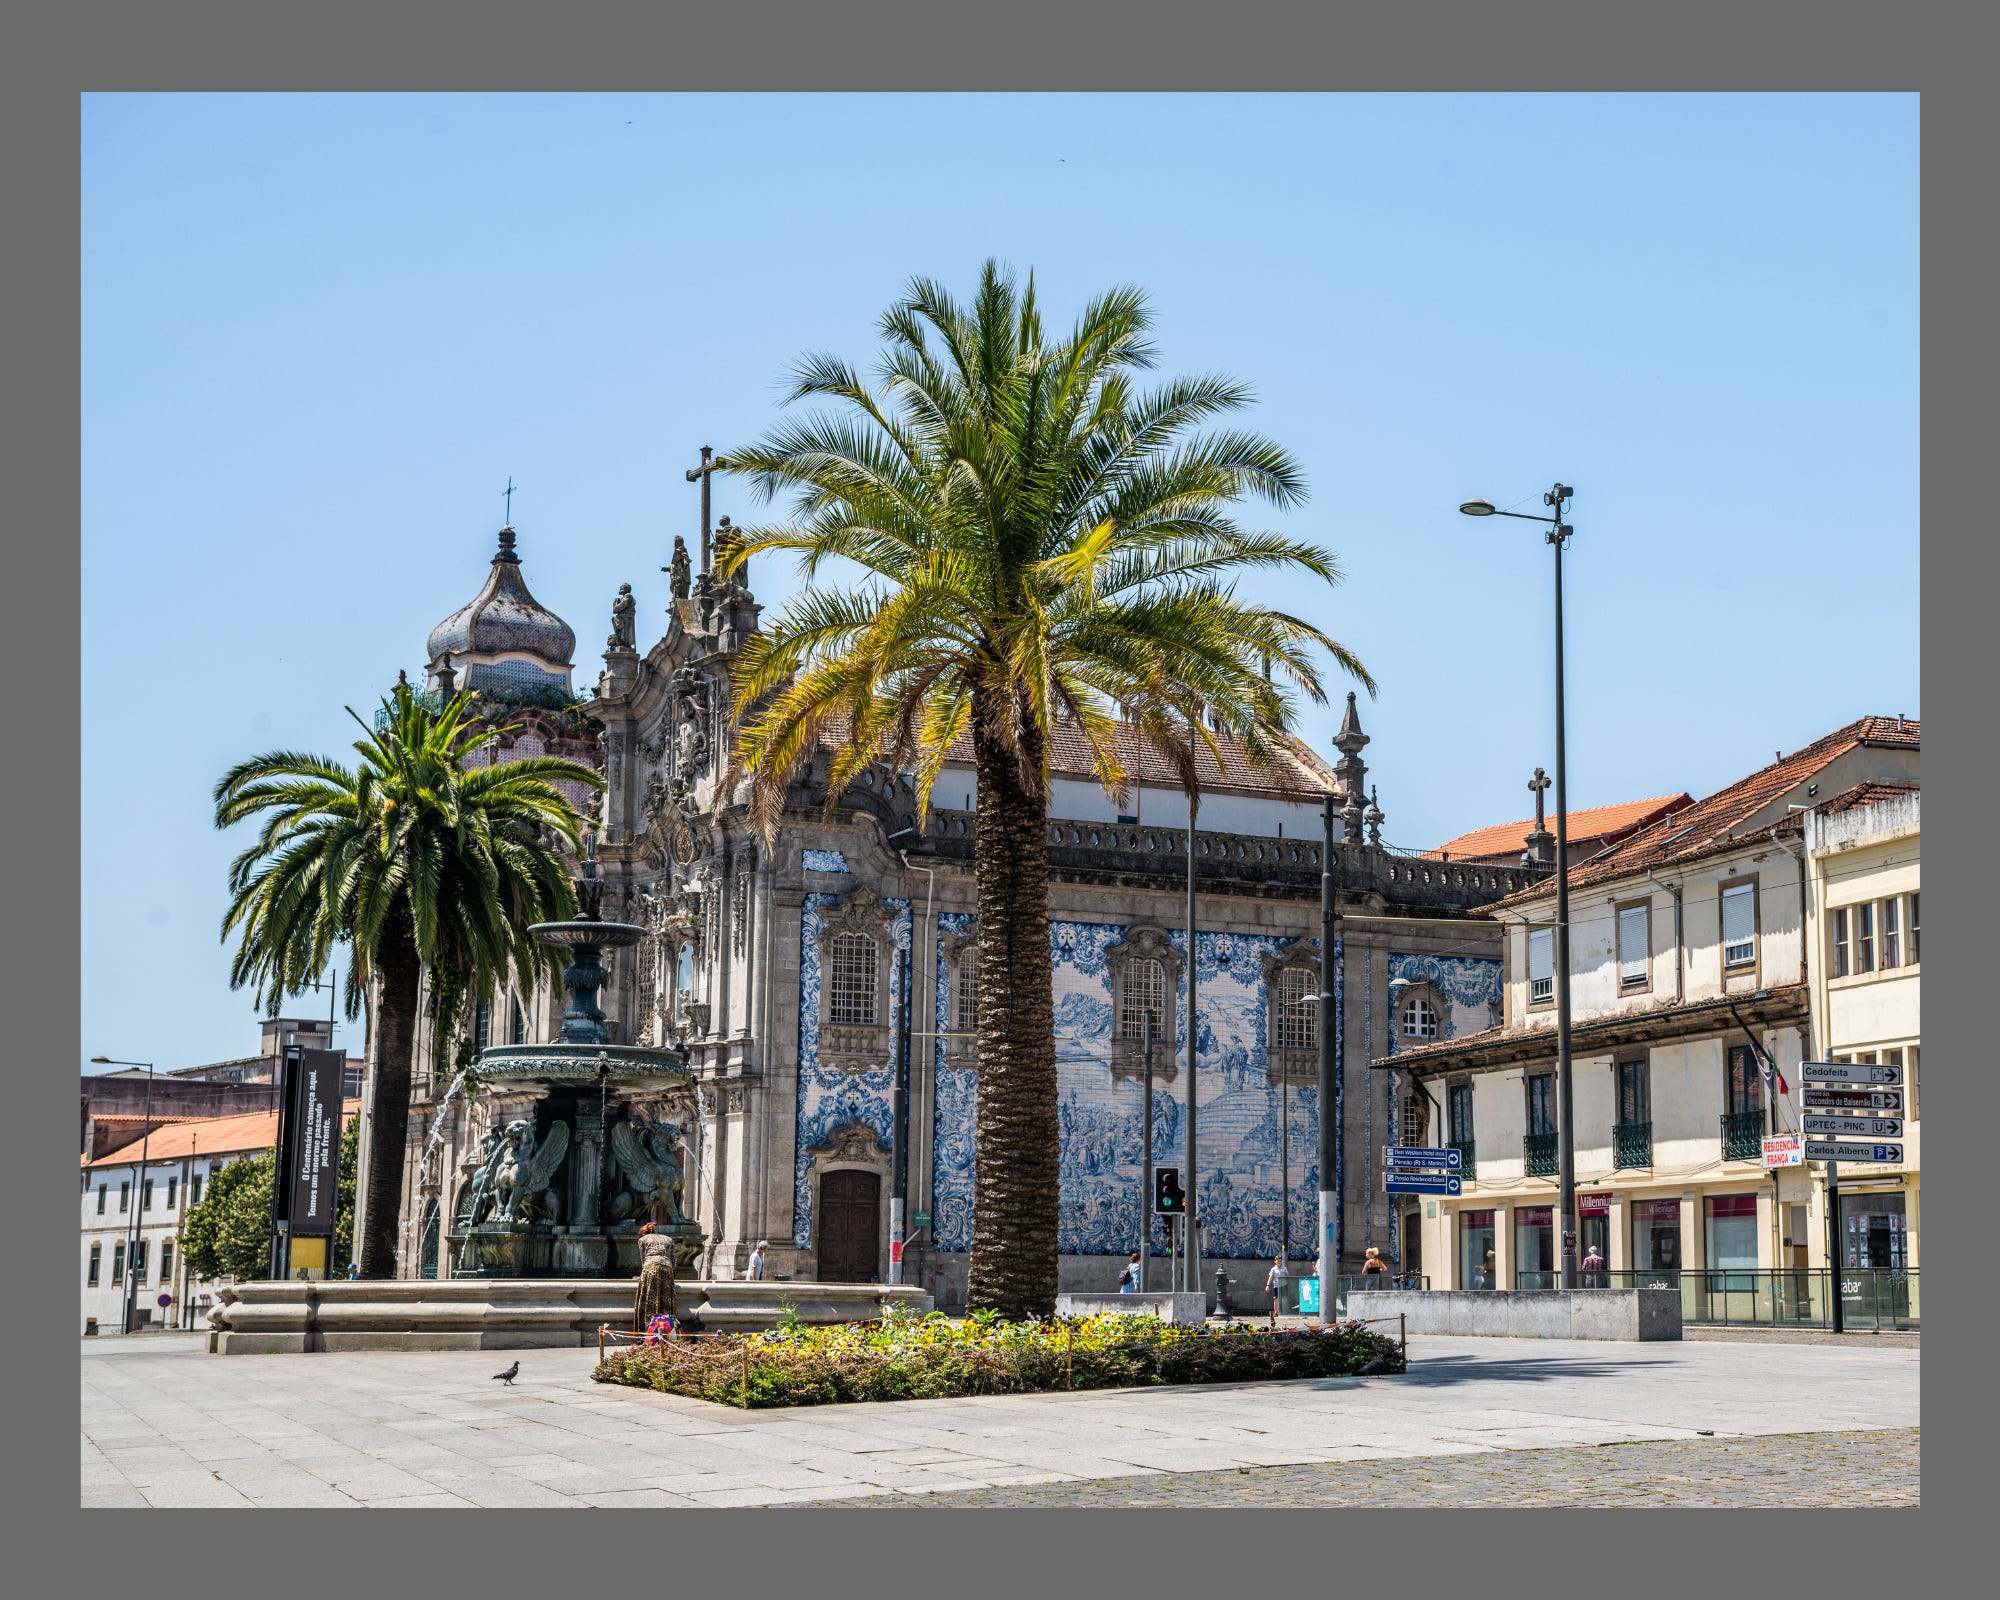 Tiled church in Porto